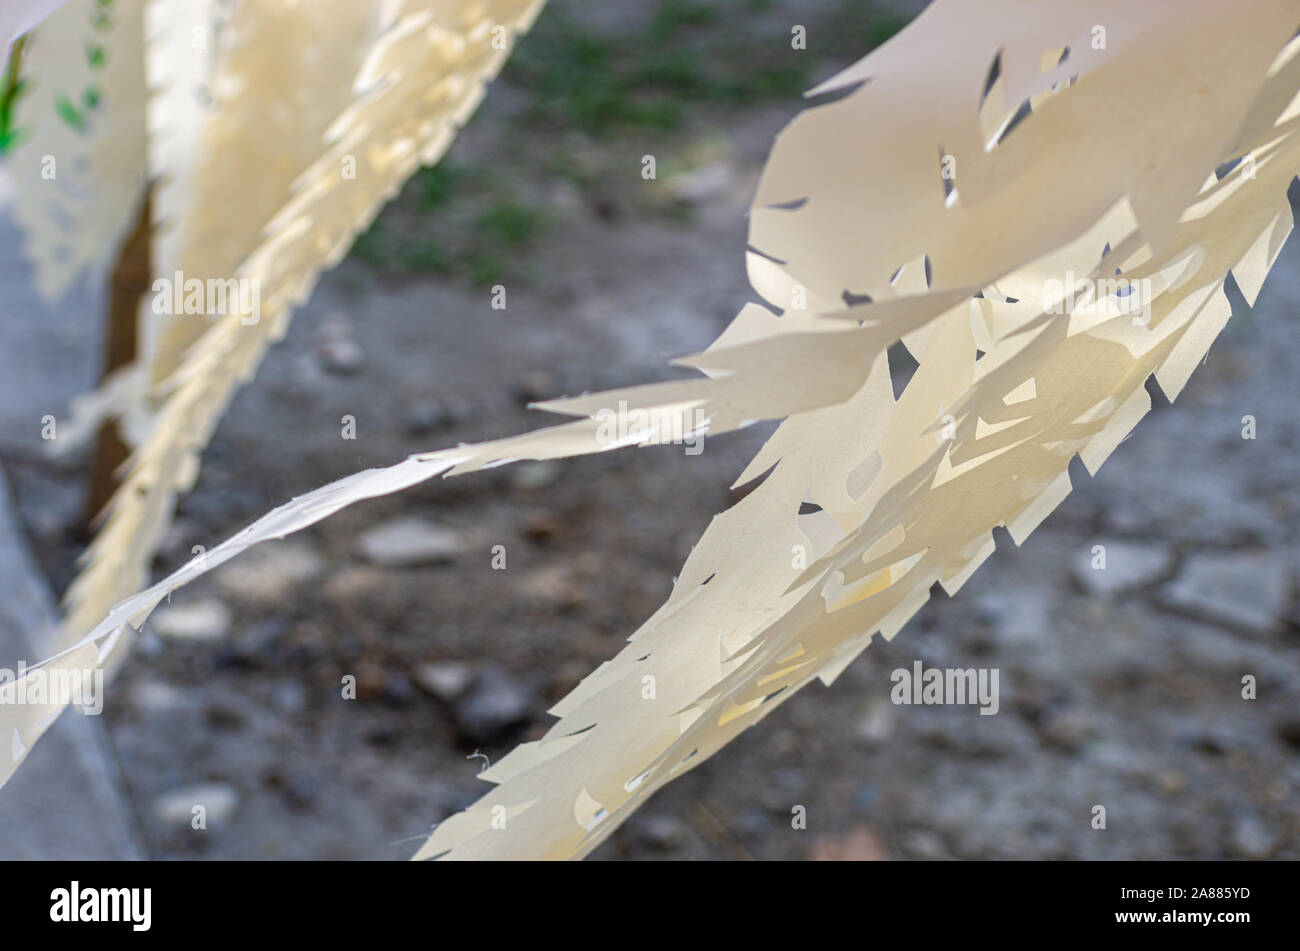 Bild der weißen Enden von Laternen durch den Wind bewegt - ausgewählte Fokus - text Raum Stockfoto